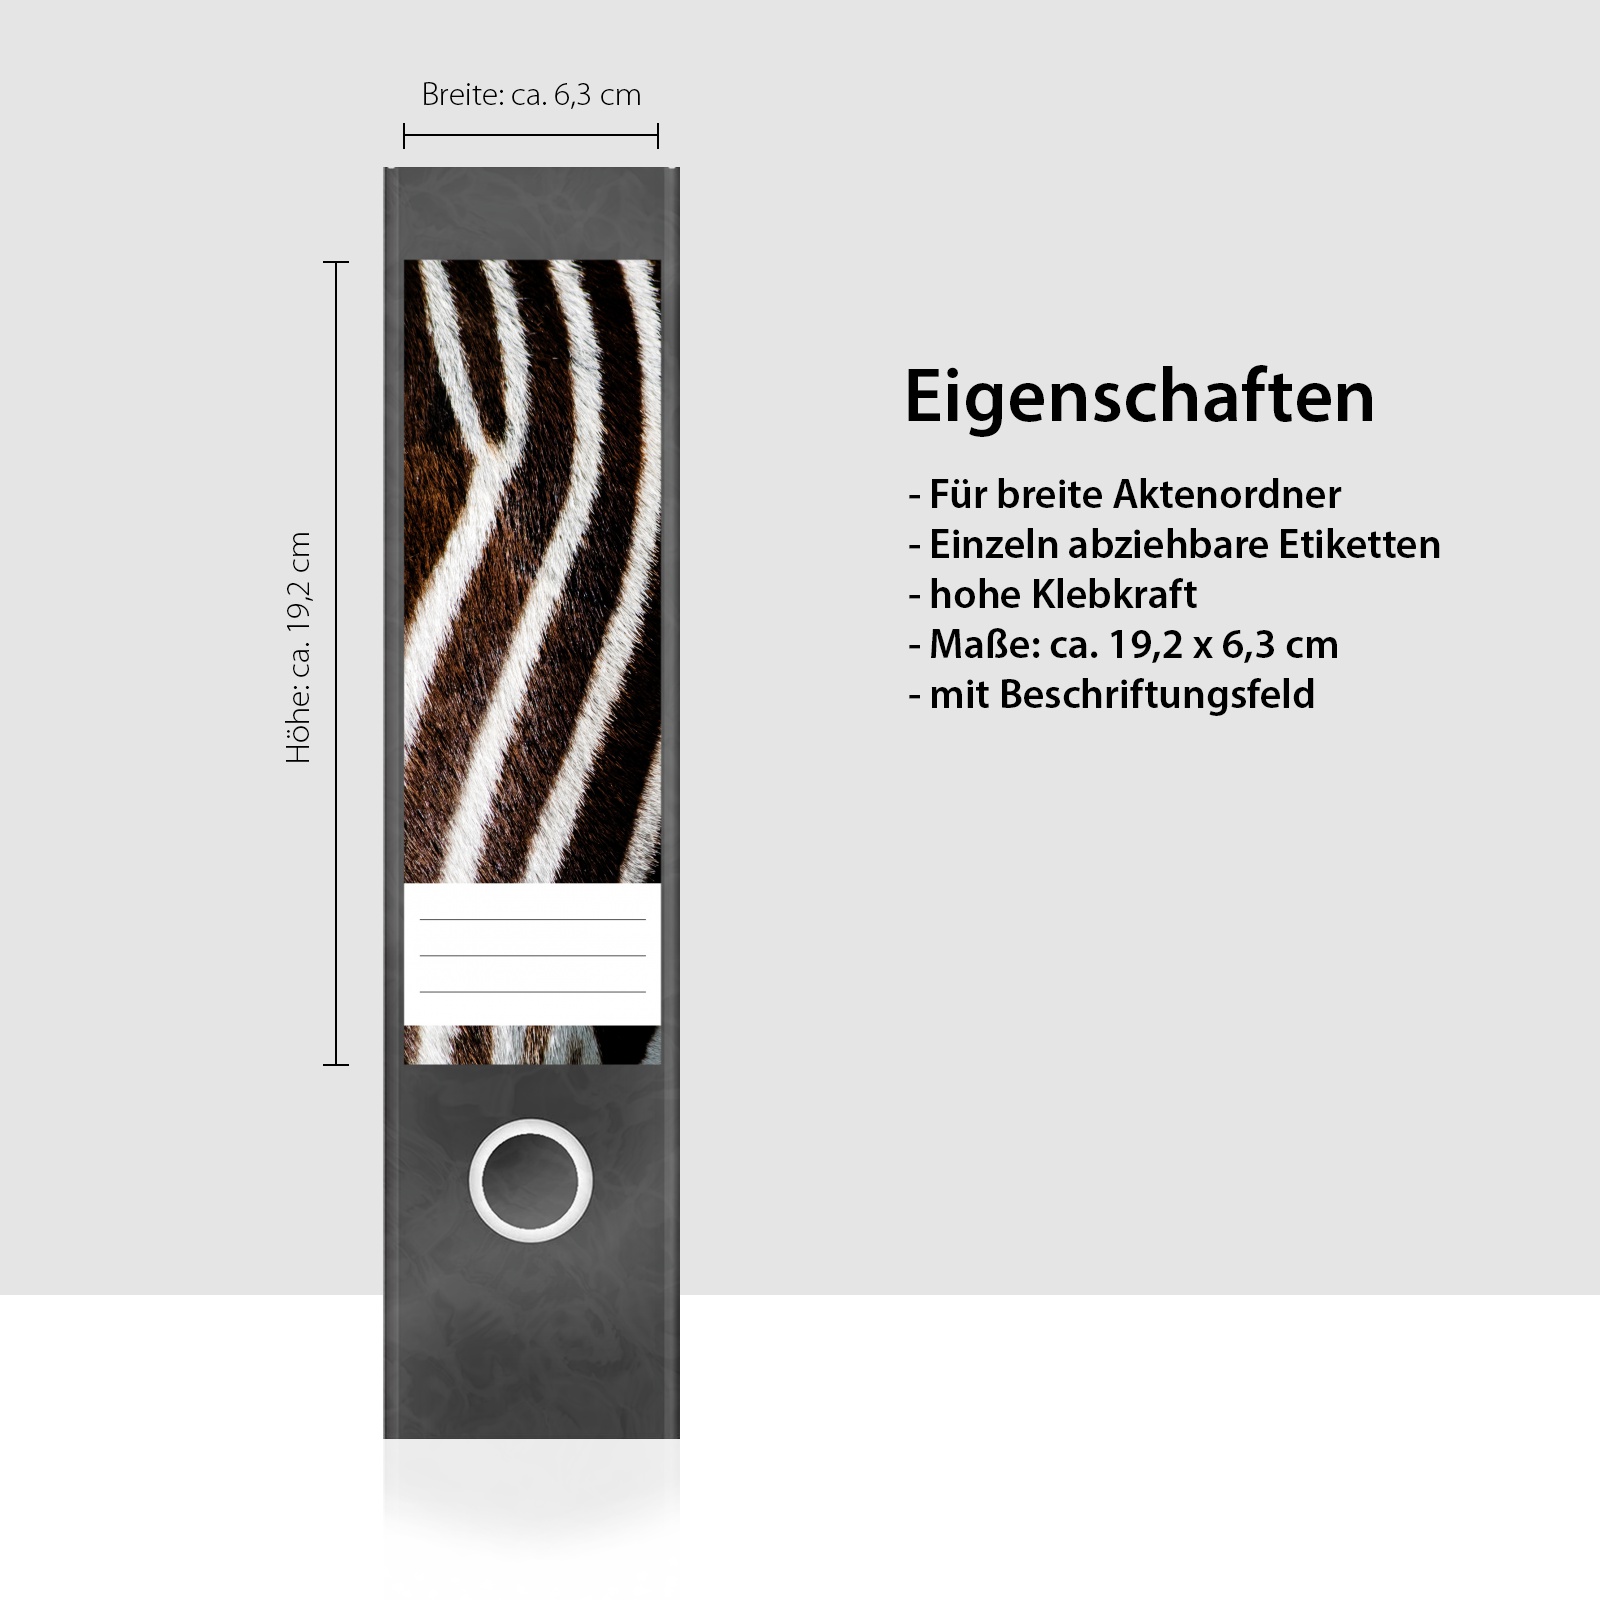 4 breite Aufkleber für Ordnerrücken Leutchqualle Qualle Selbstklebende Design Ordneretiketten Rückenschilder Etiketten für Ordner 